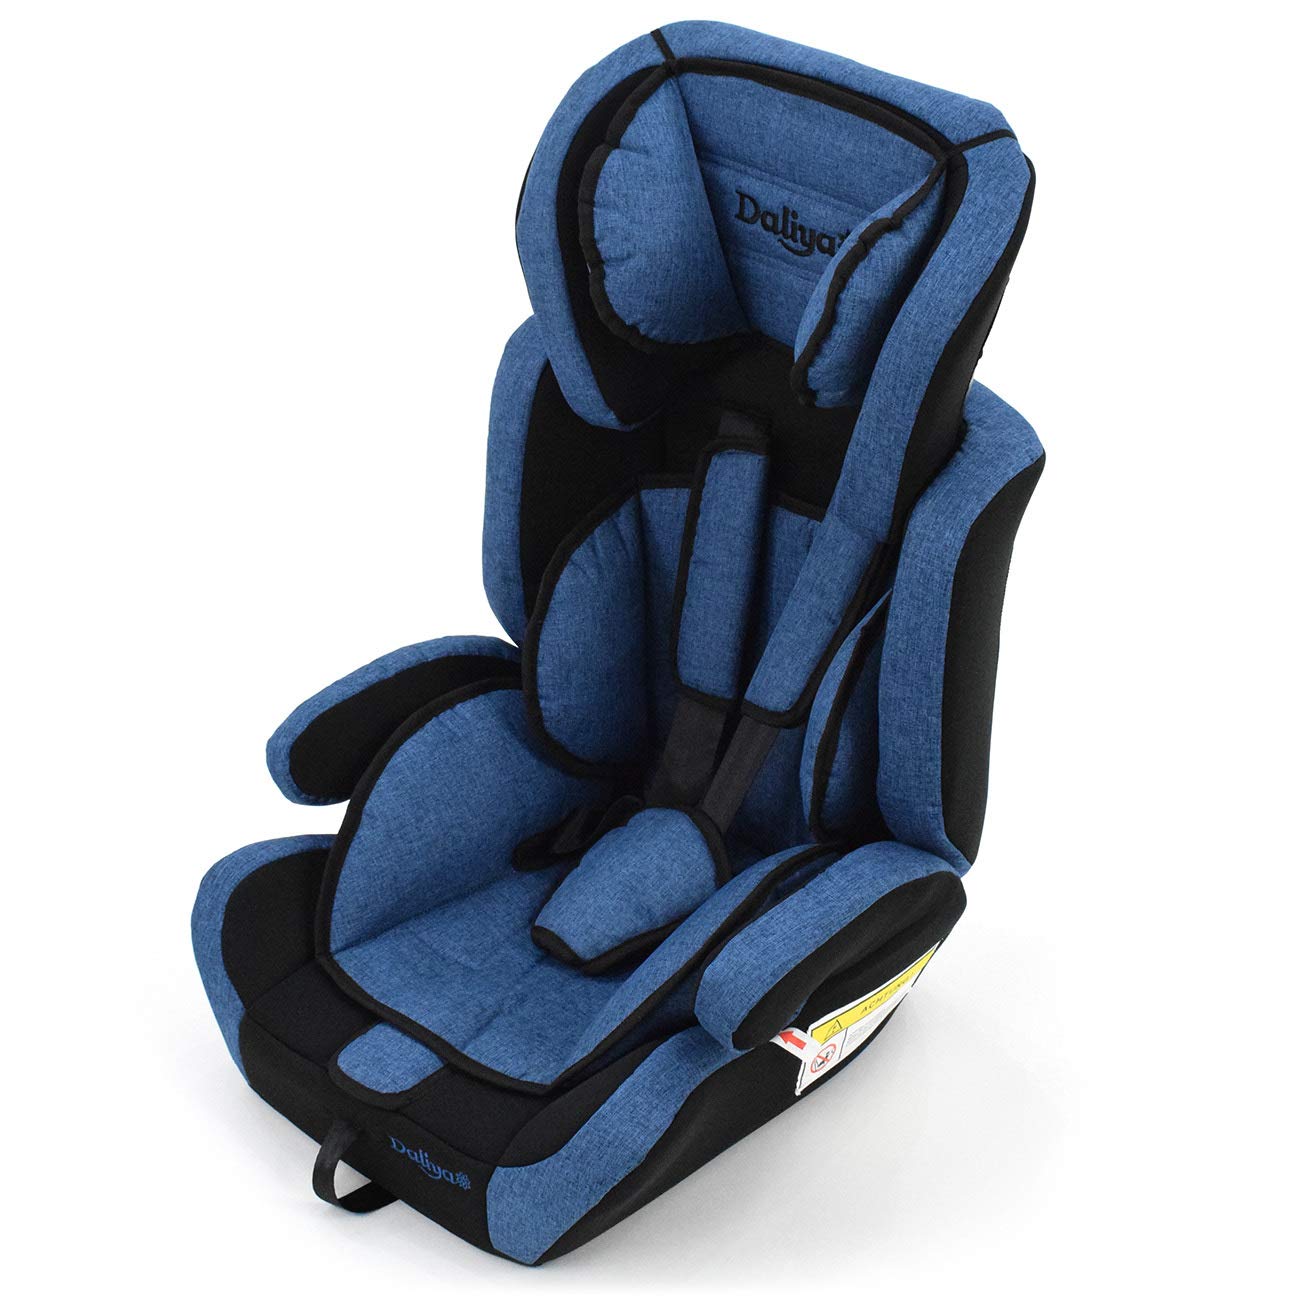 Daliya Carsitto Child Car Seat Group 1+2+3 ECE R 44/04 Growing with Growing Child Car Seat 9-36 kg